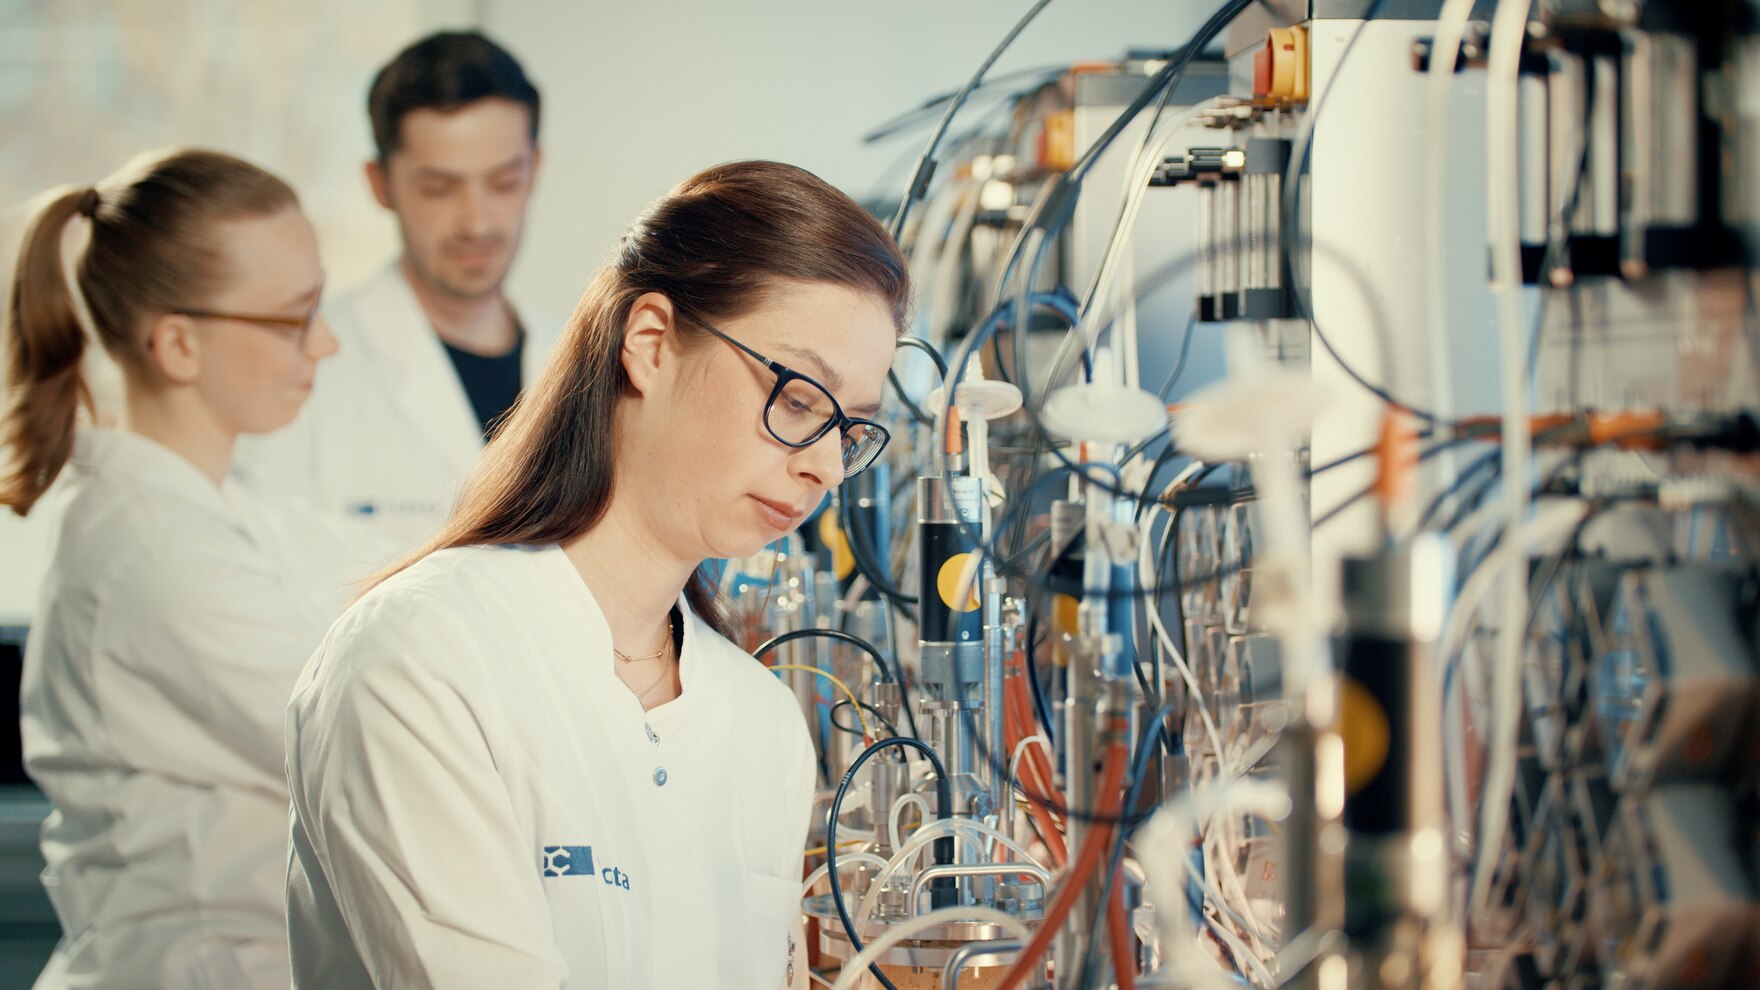 Drei Personen in weißen Kitteln stehen in einem Labor an Geräten.